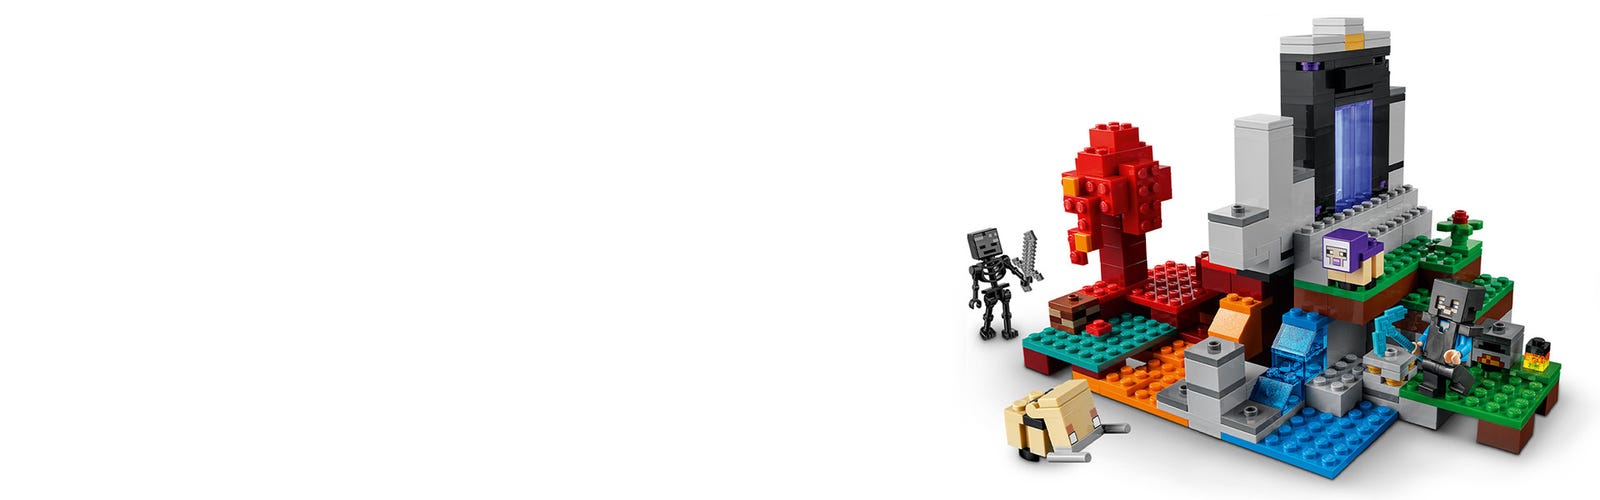 Le portail en ruine 21172 - LEGO® MINECRAFT - Instructions de montage -  Service client -  FR